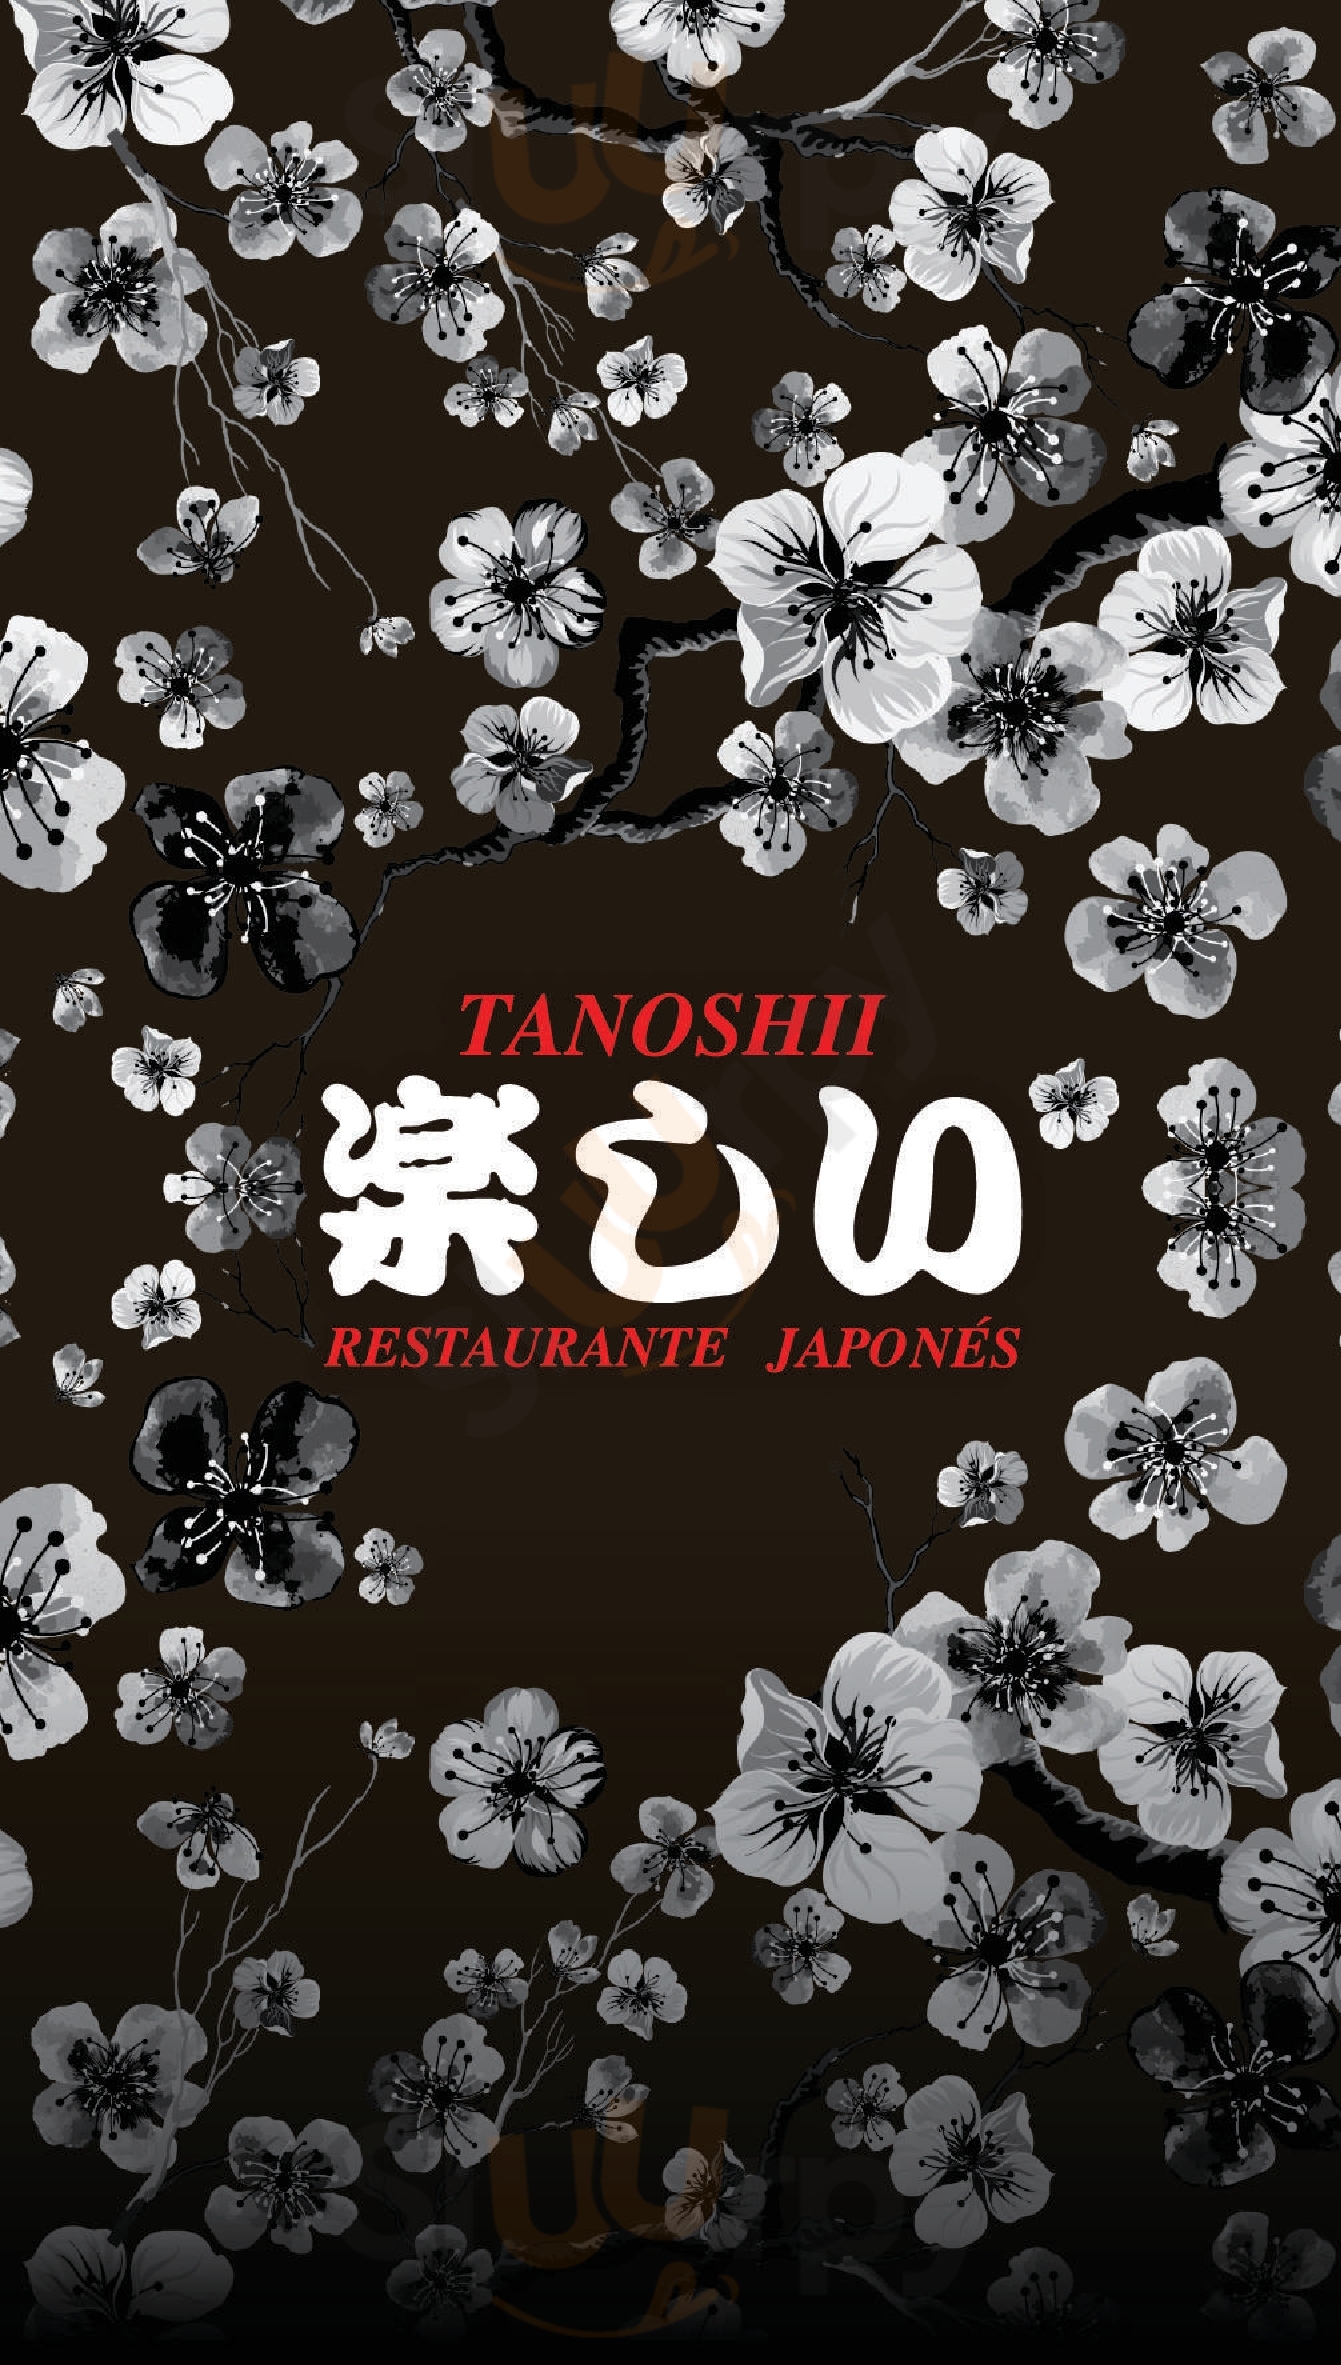 Tanoshii Restaurant Japones Quito Menu - 1